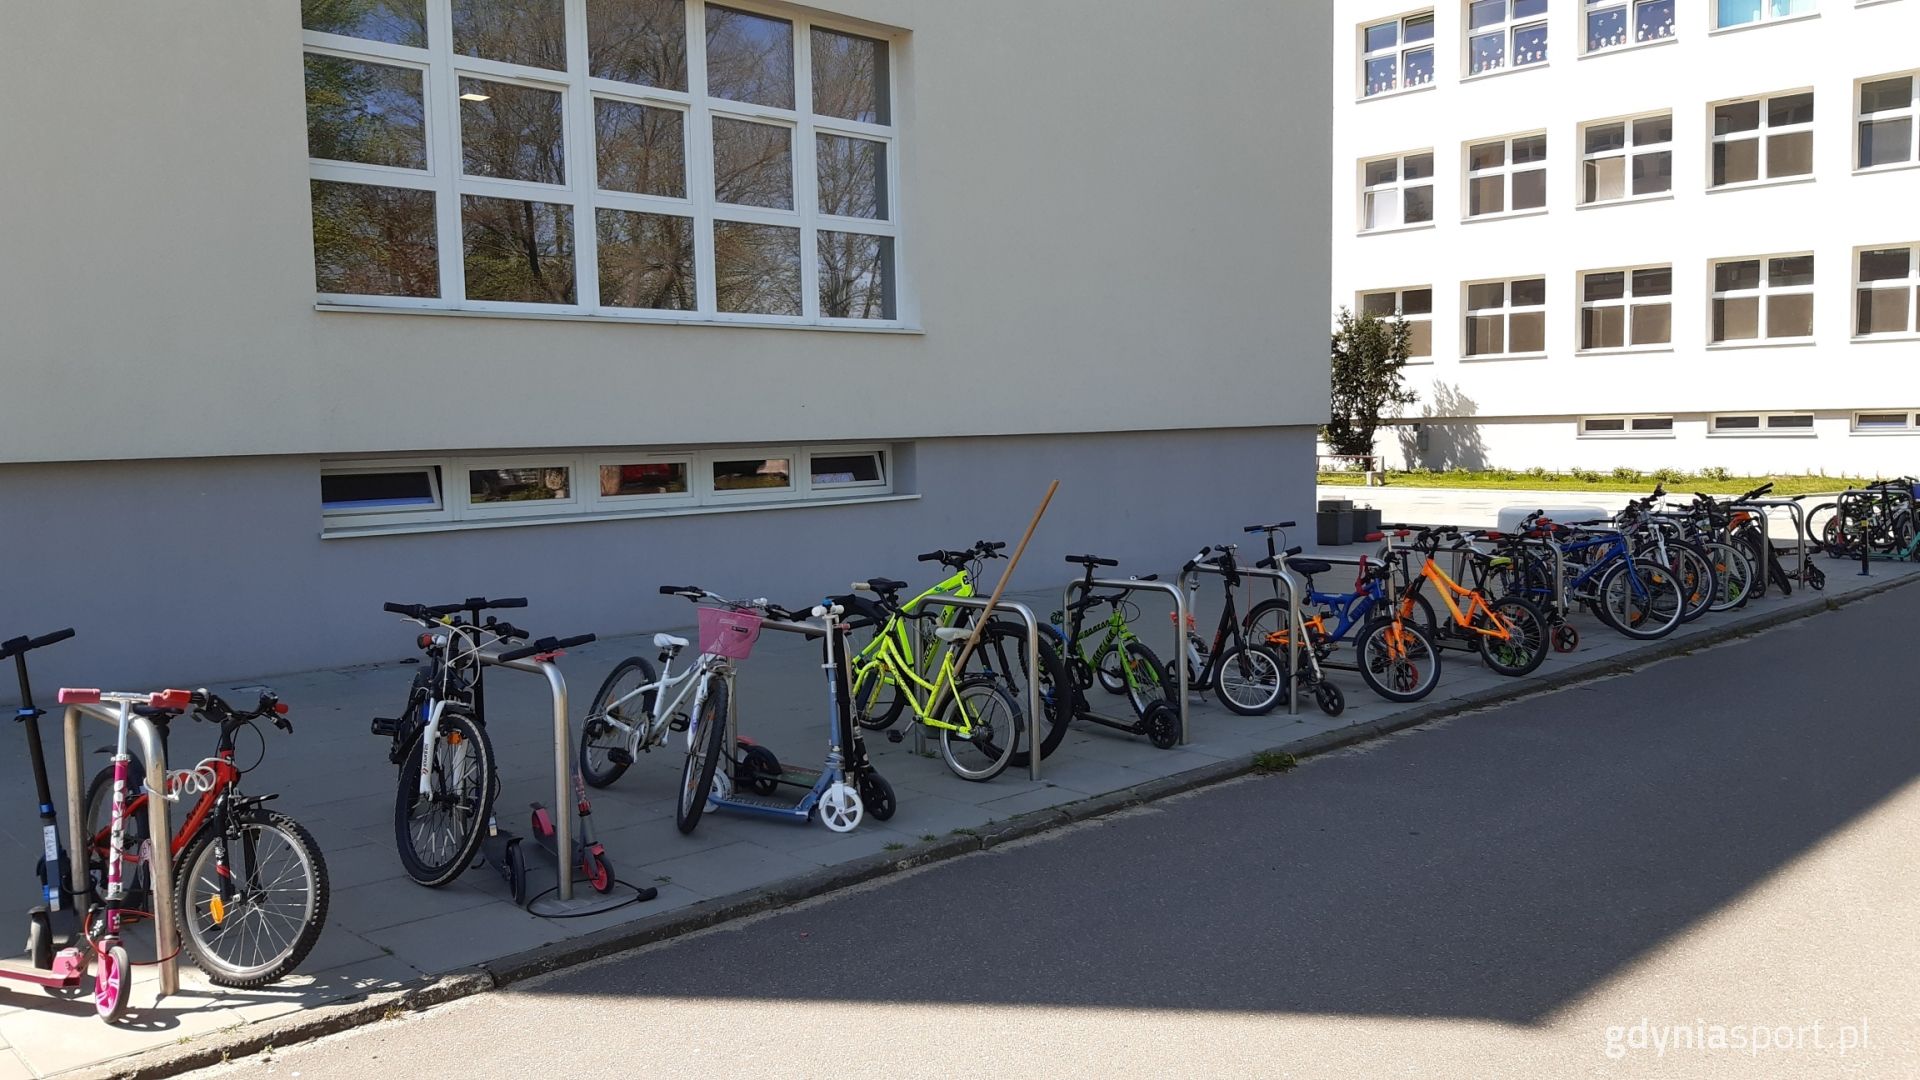 Rowerki i hulajnogi zaparkowane pod szkołą 